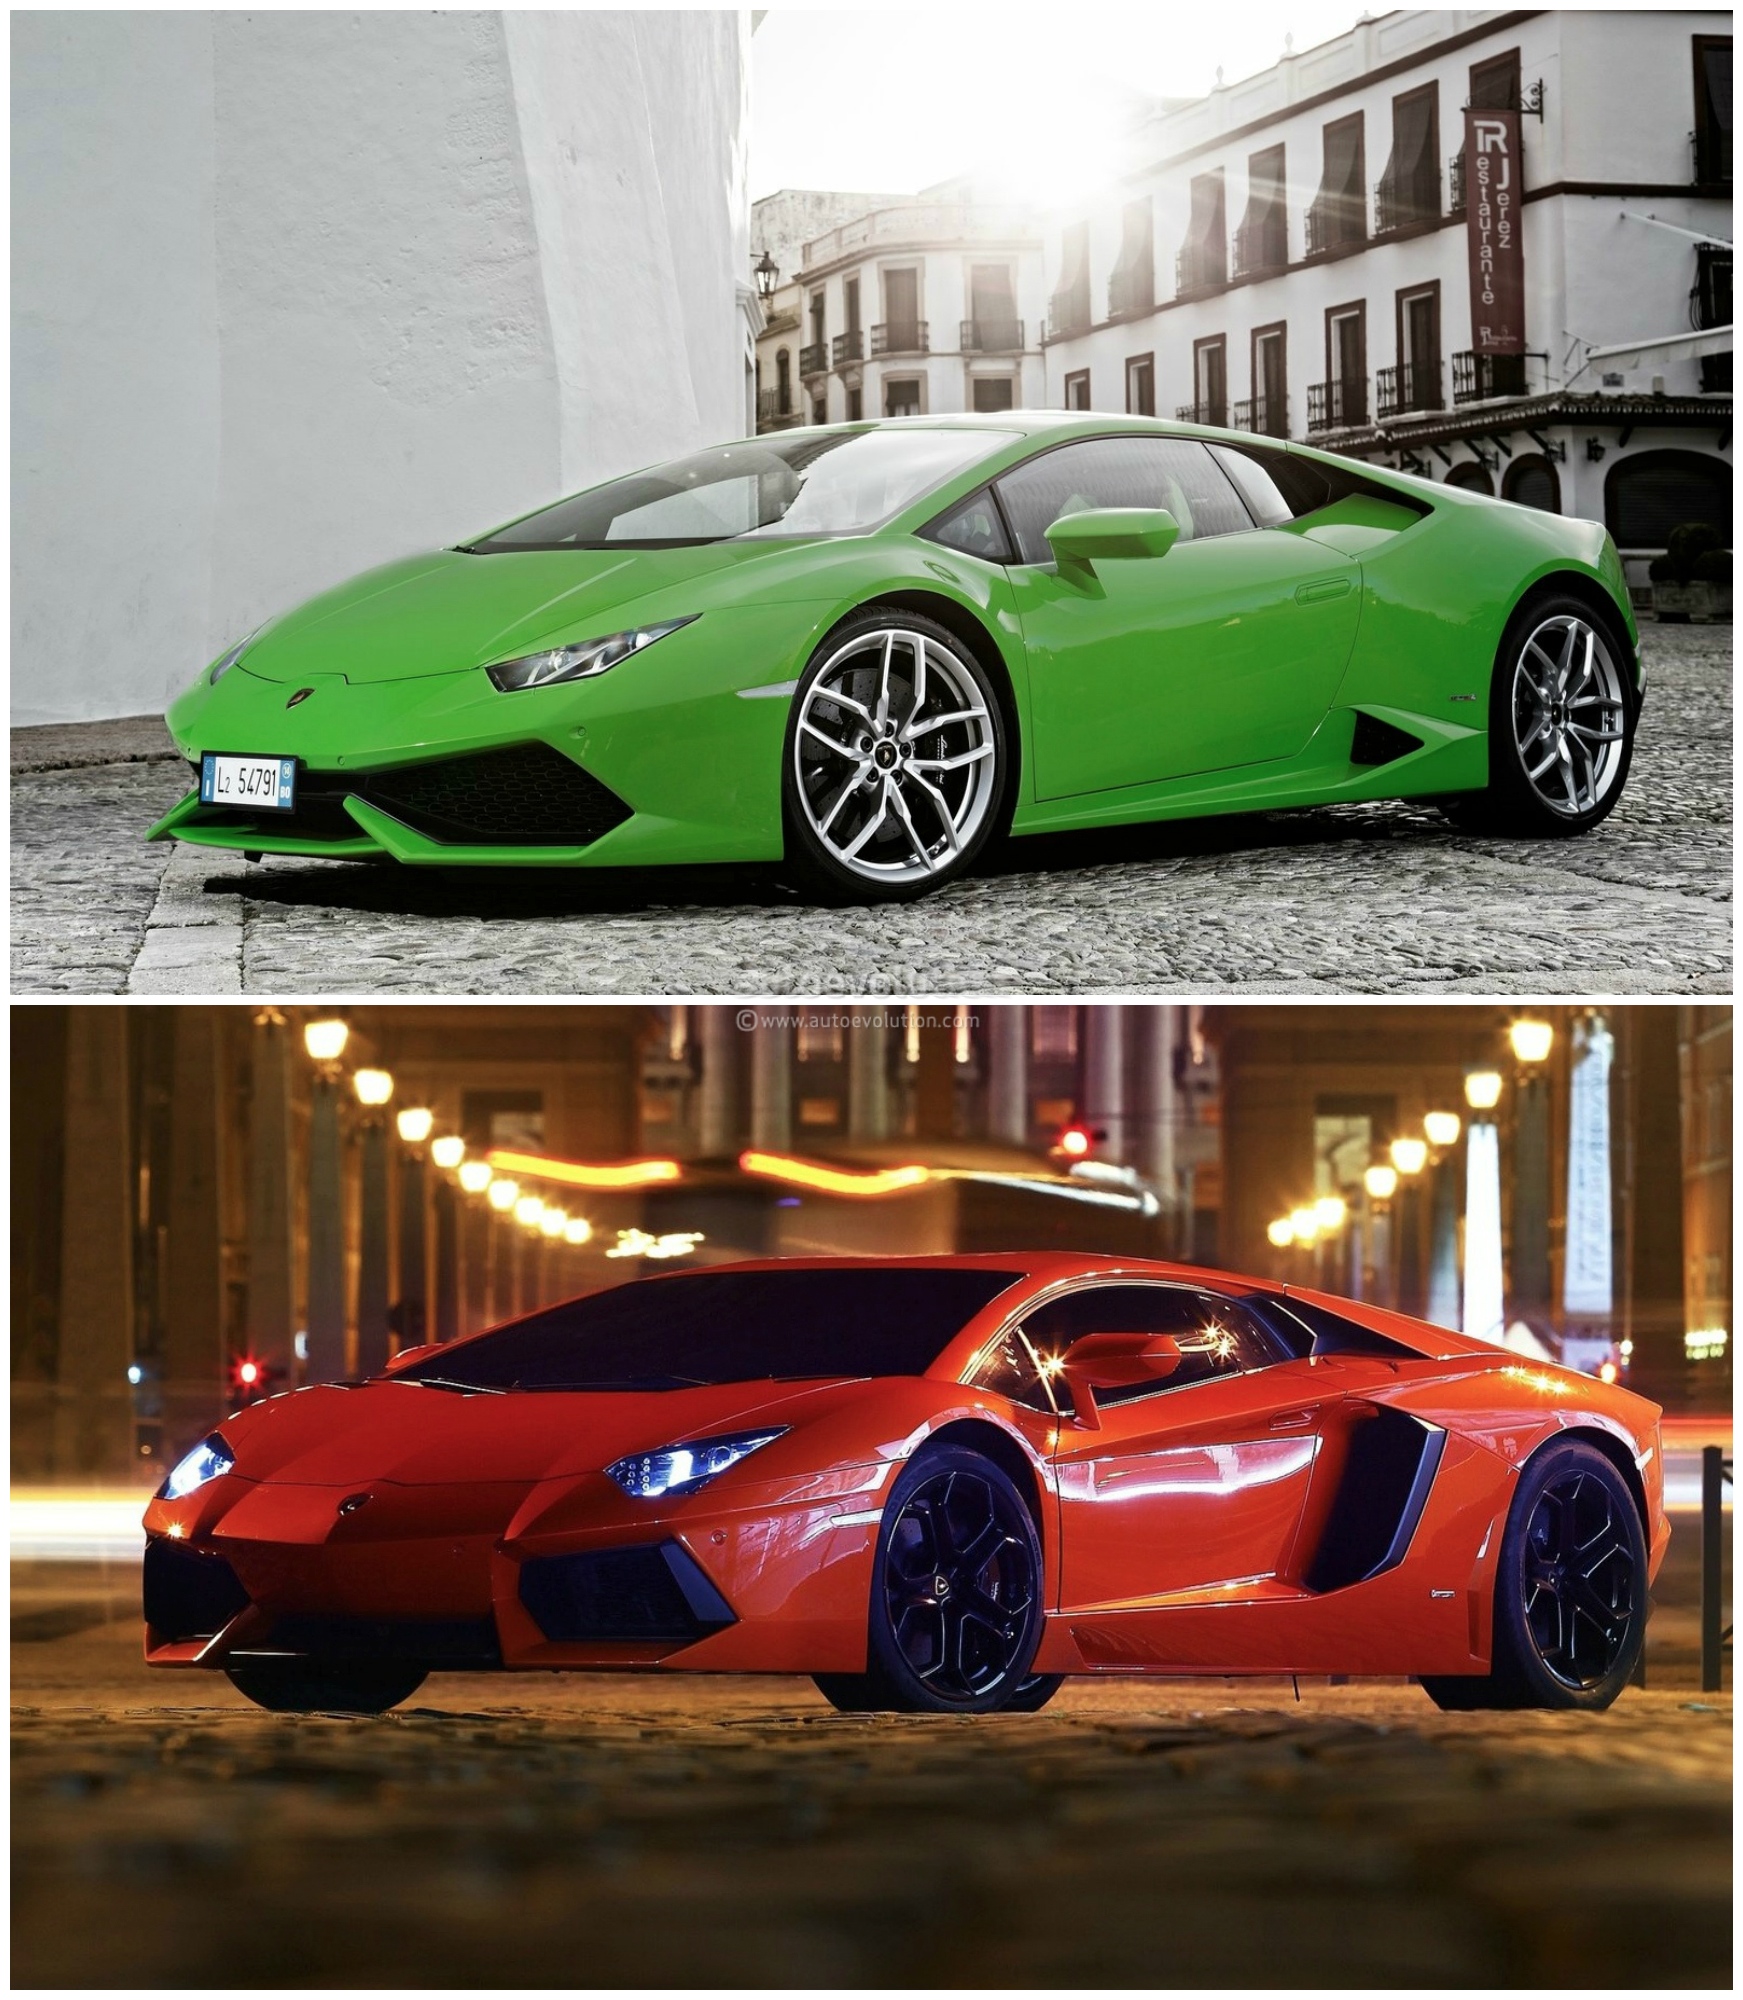 Lamborghini Comparison Huracan Vs Aventador Autoevolution